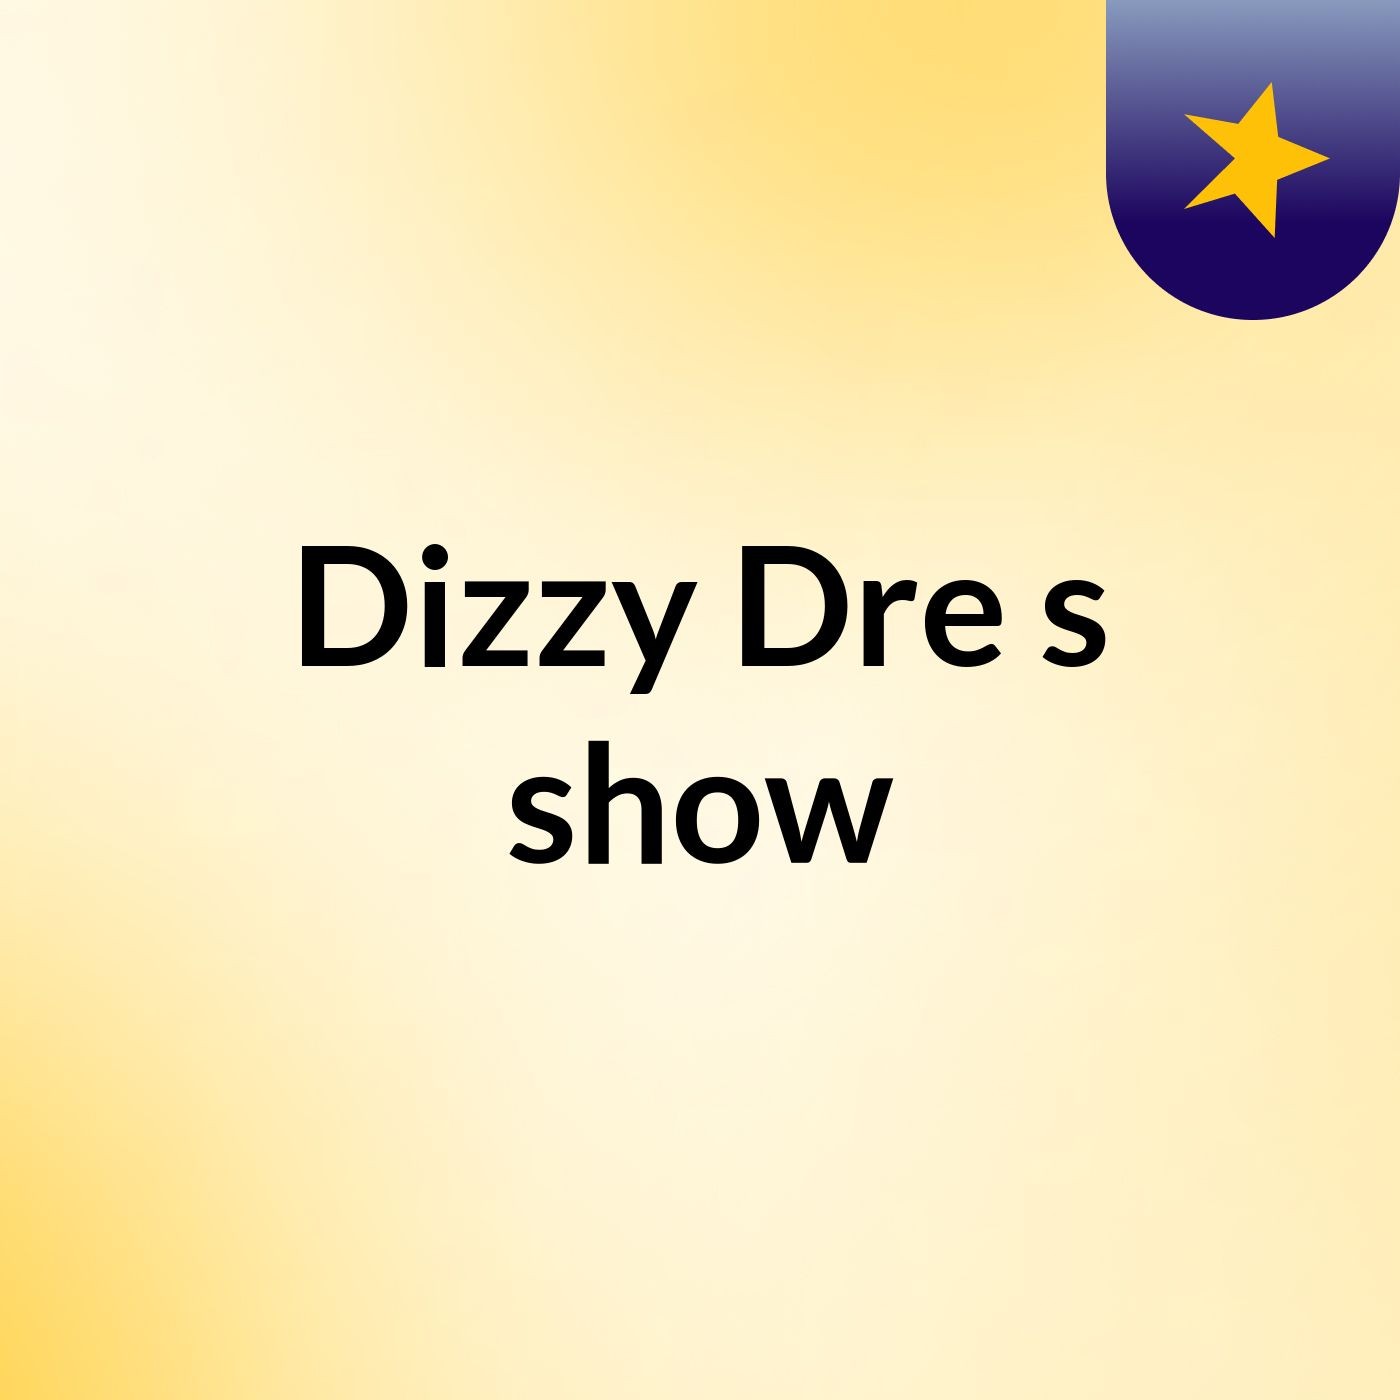 Dizzy Dre's show